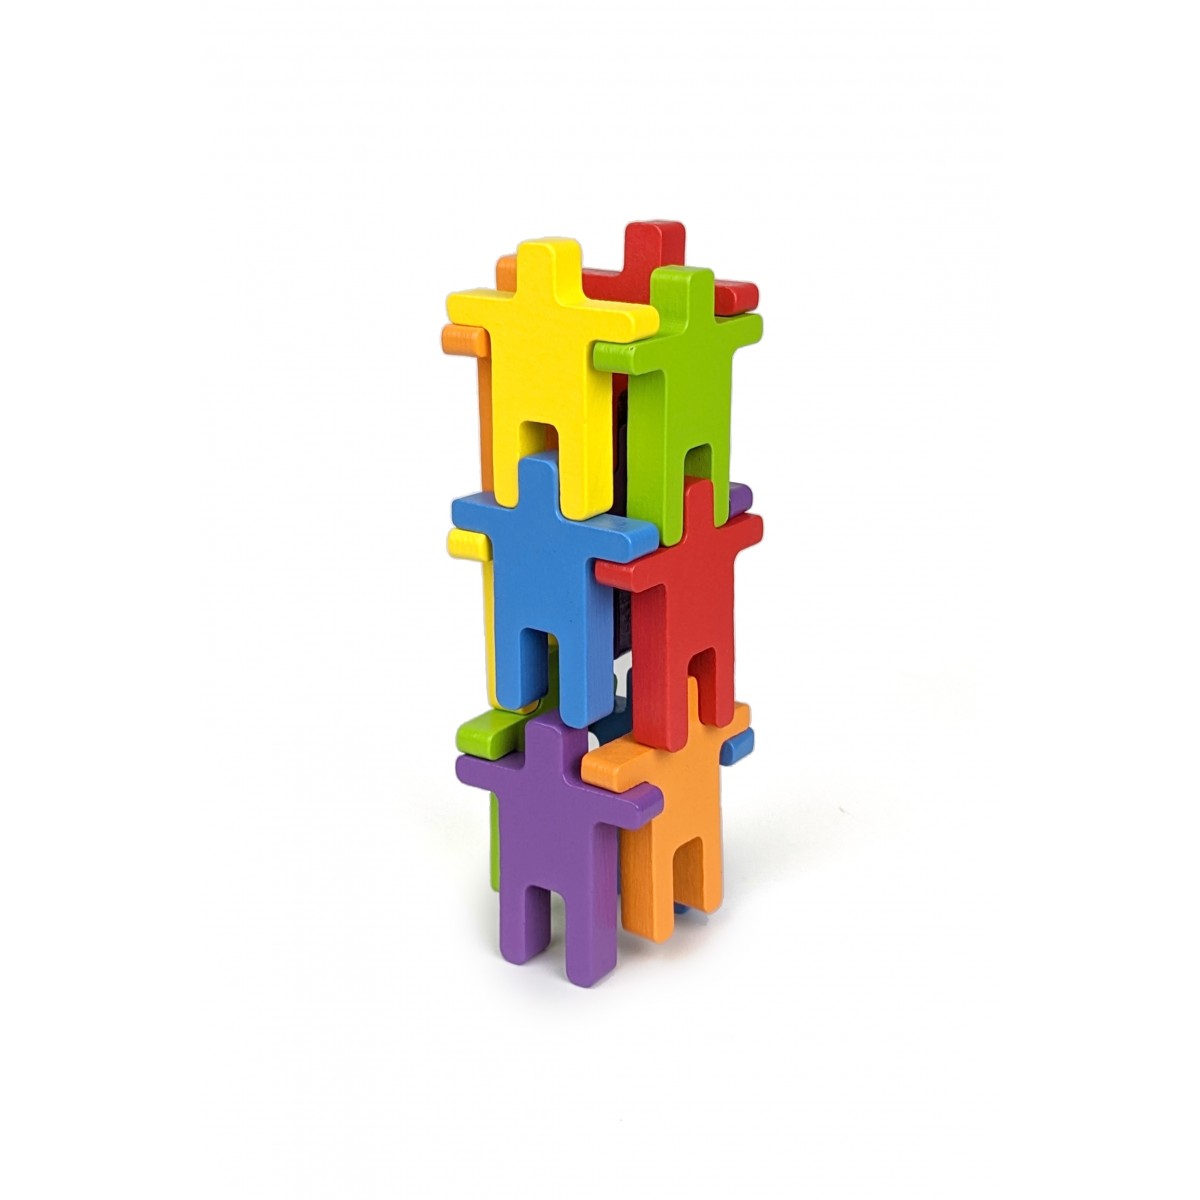 STAPLA Rainbow - 12 Spielfiguren in 6 fröhlichen Farben von Neue Freunde.